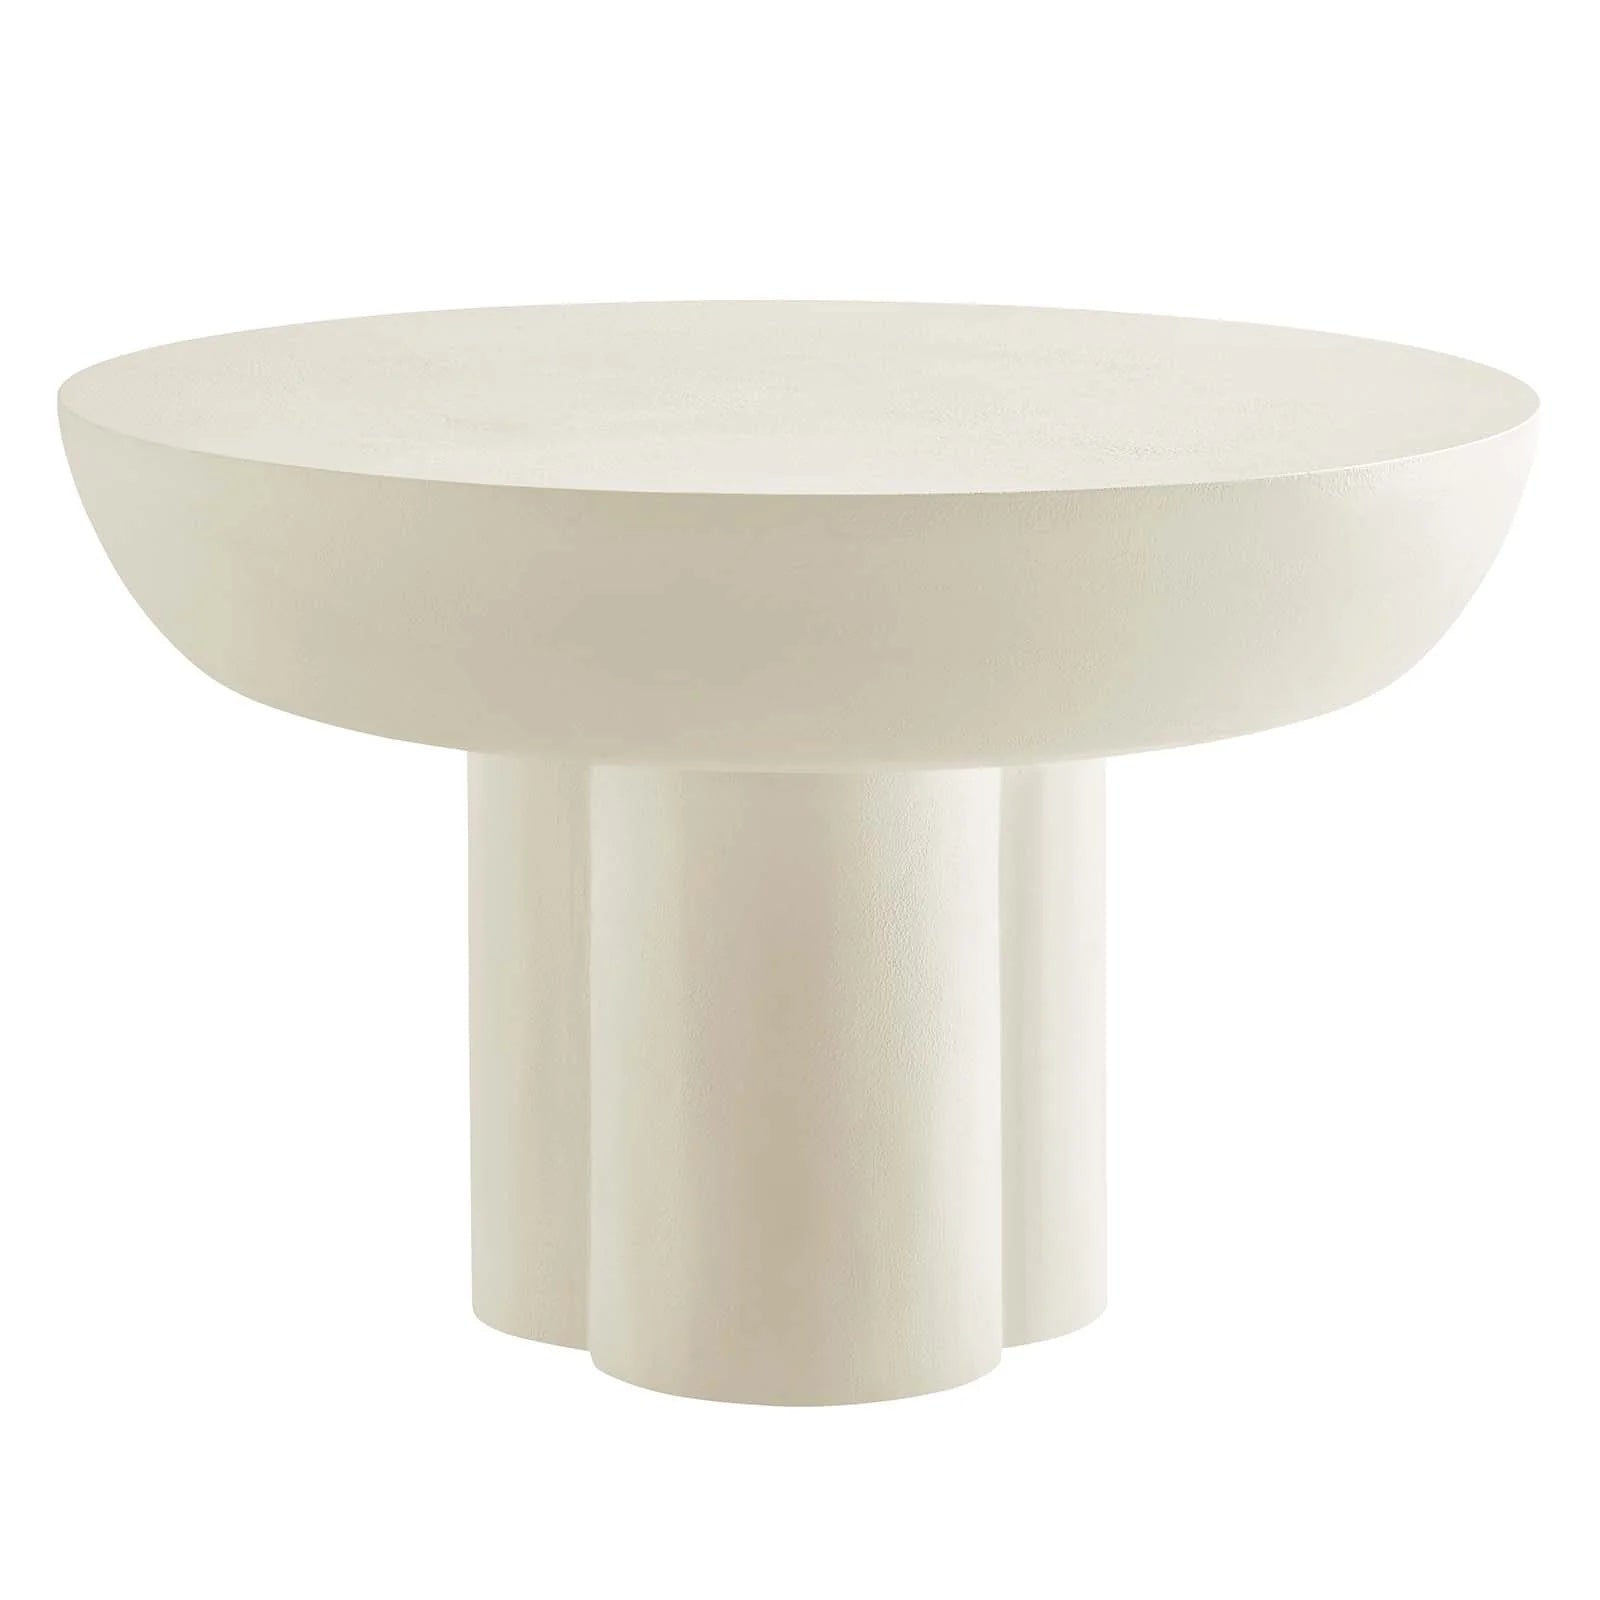 Casper Round Concrete Coffee Table - White